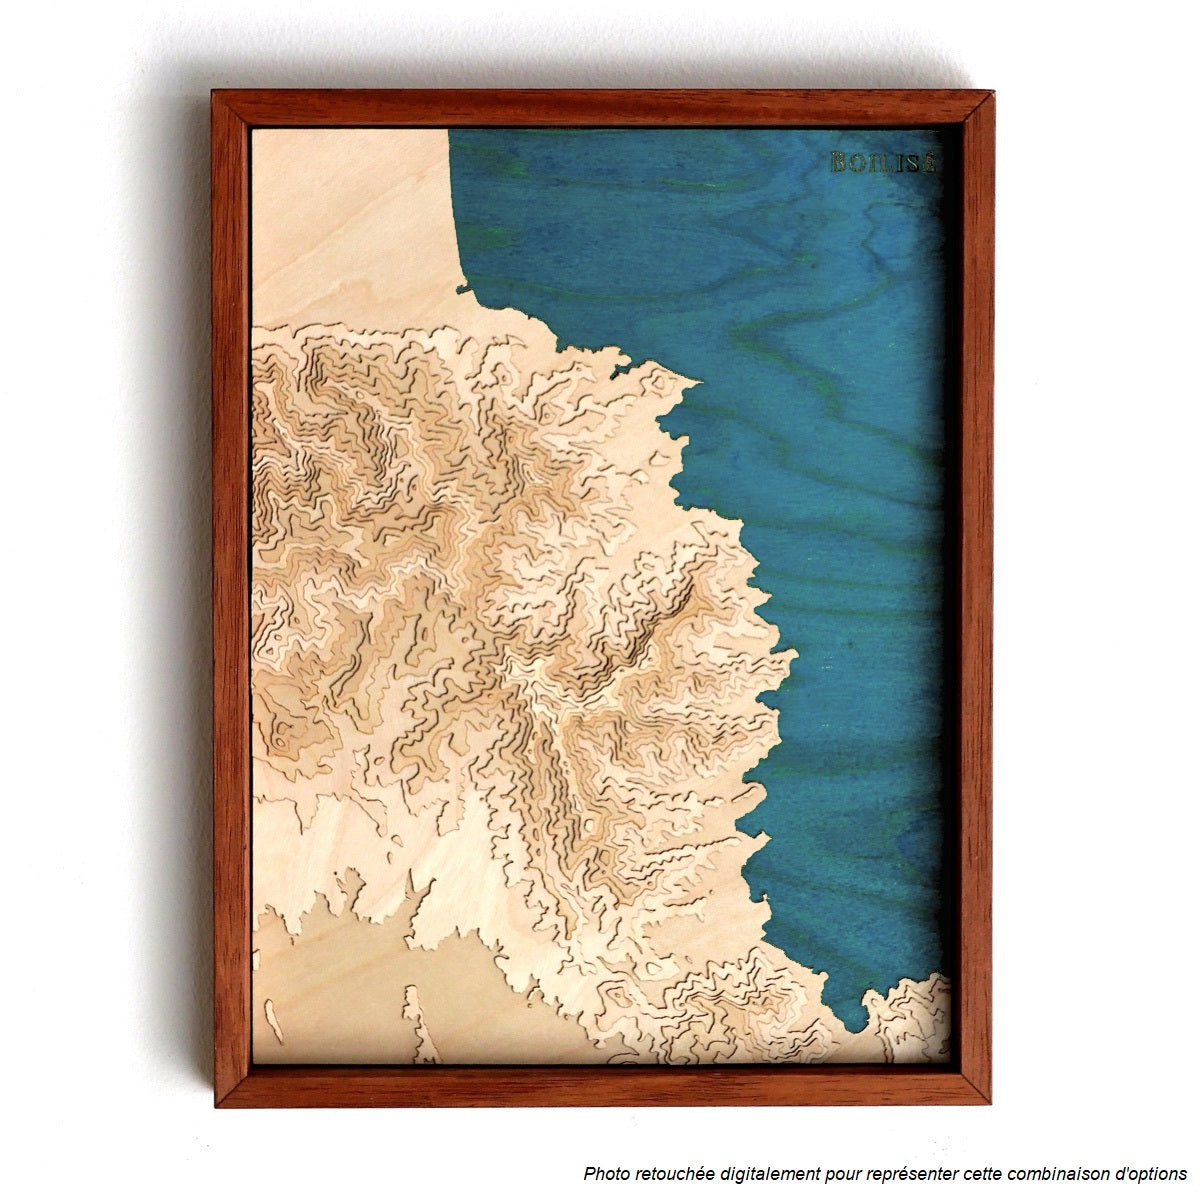 Carte de la côte vermeille en relief et en bois dans un cadre brun avec la méditérannée en bleu marine